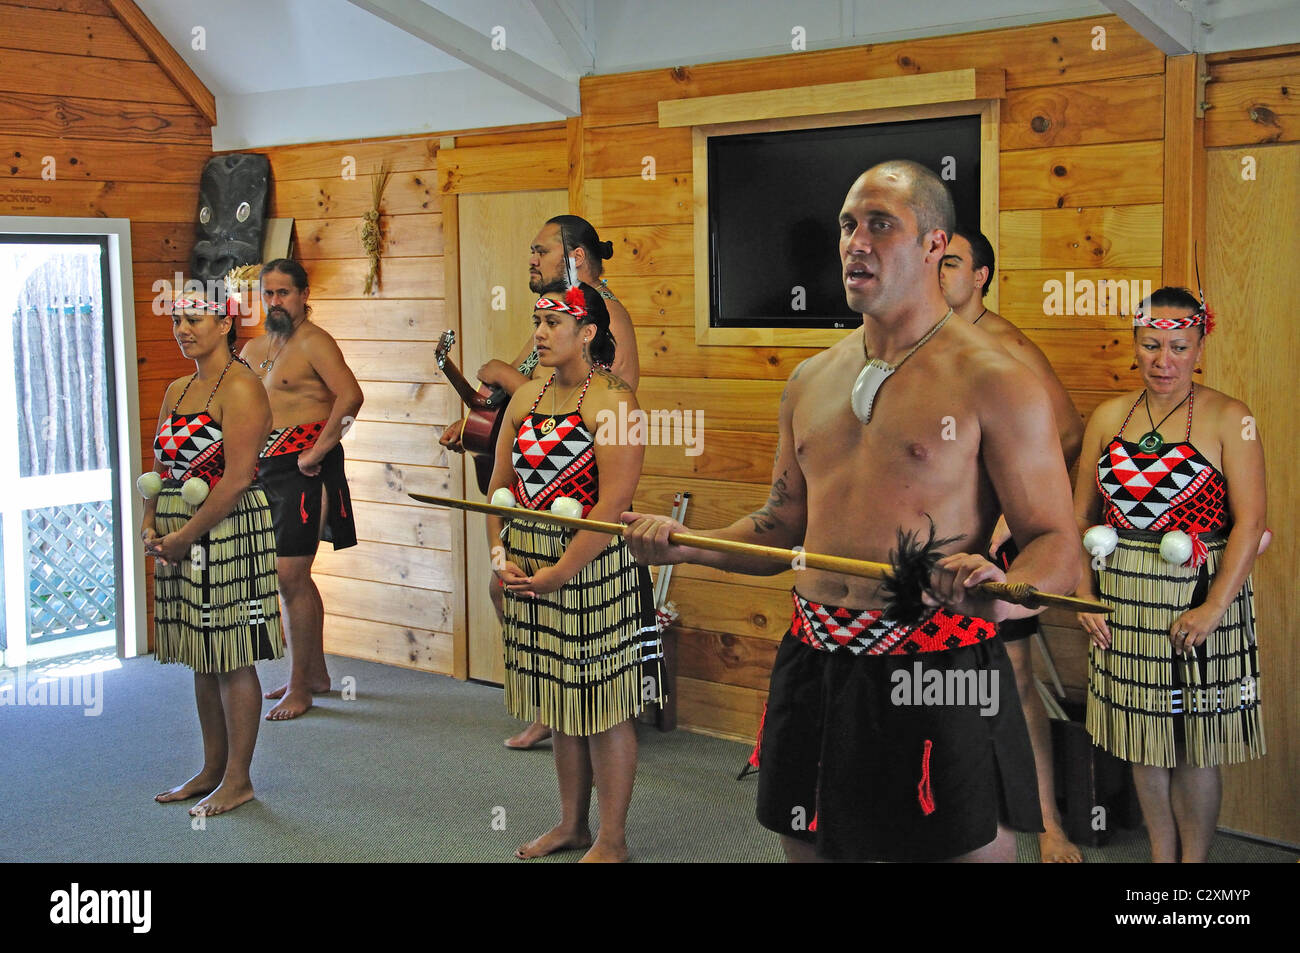 Le rendement de la culture Maori, vivant de Whakarewarewa Village Thermal, Rotorua, Bay of Plenty, North Island, New Zealand Banque D'Images